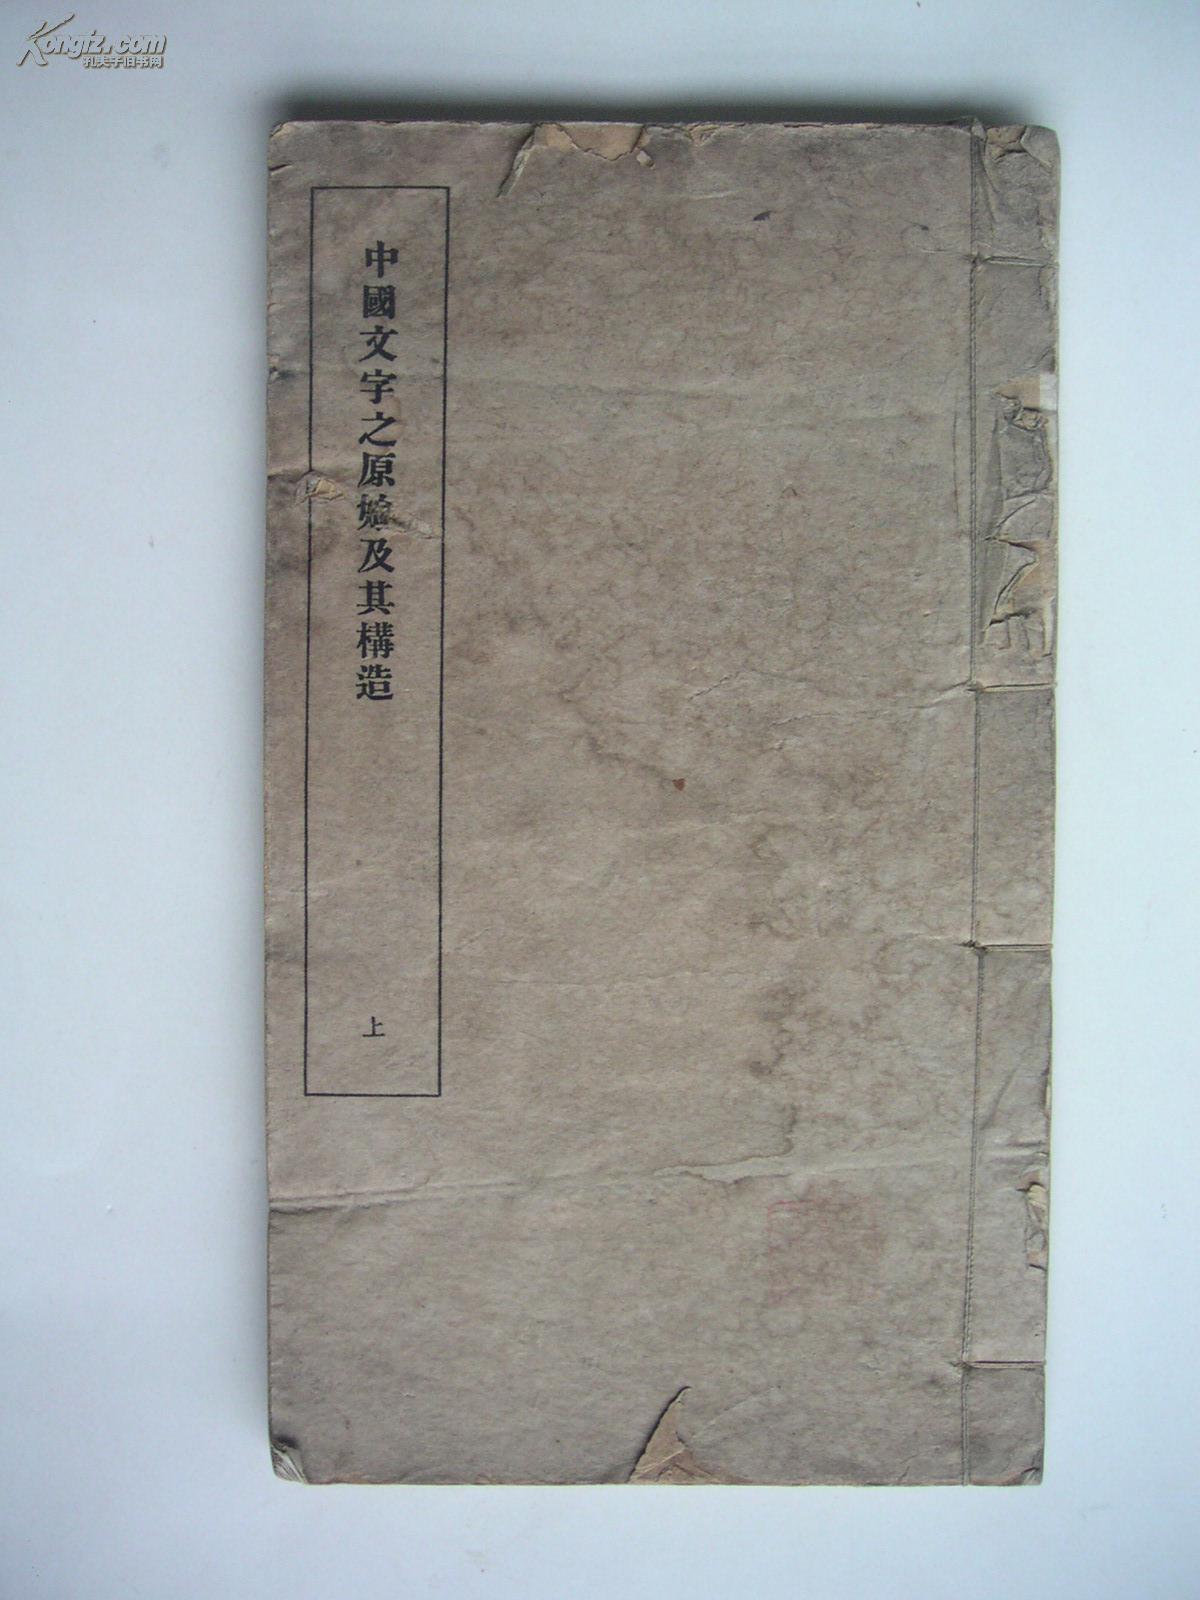 中国文字之原始及其构造【民国排印本。内有大量图版。】